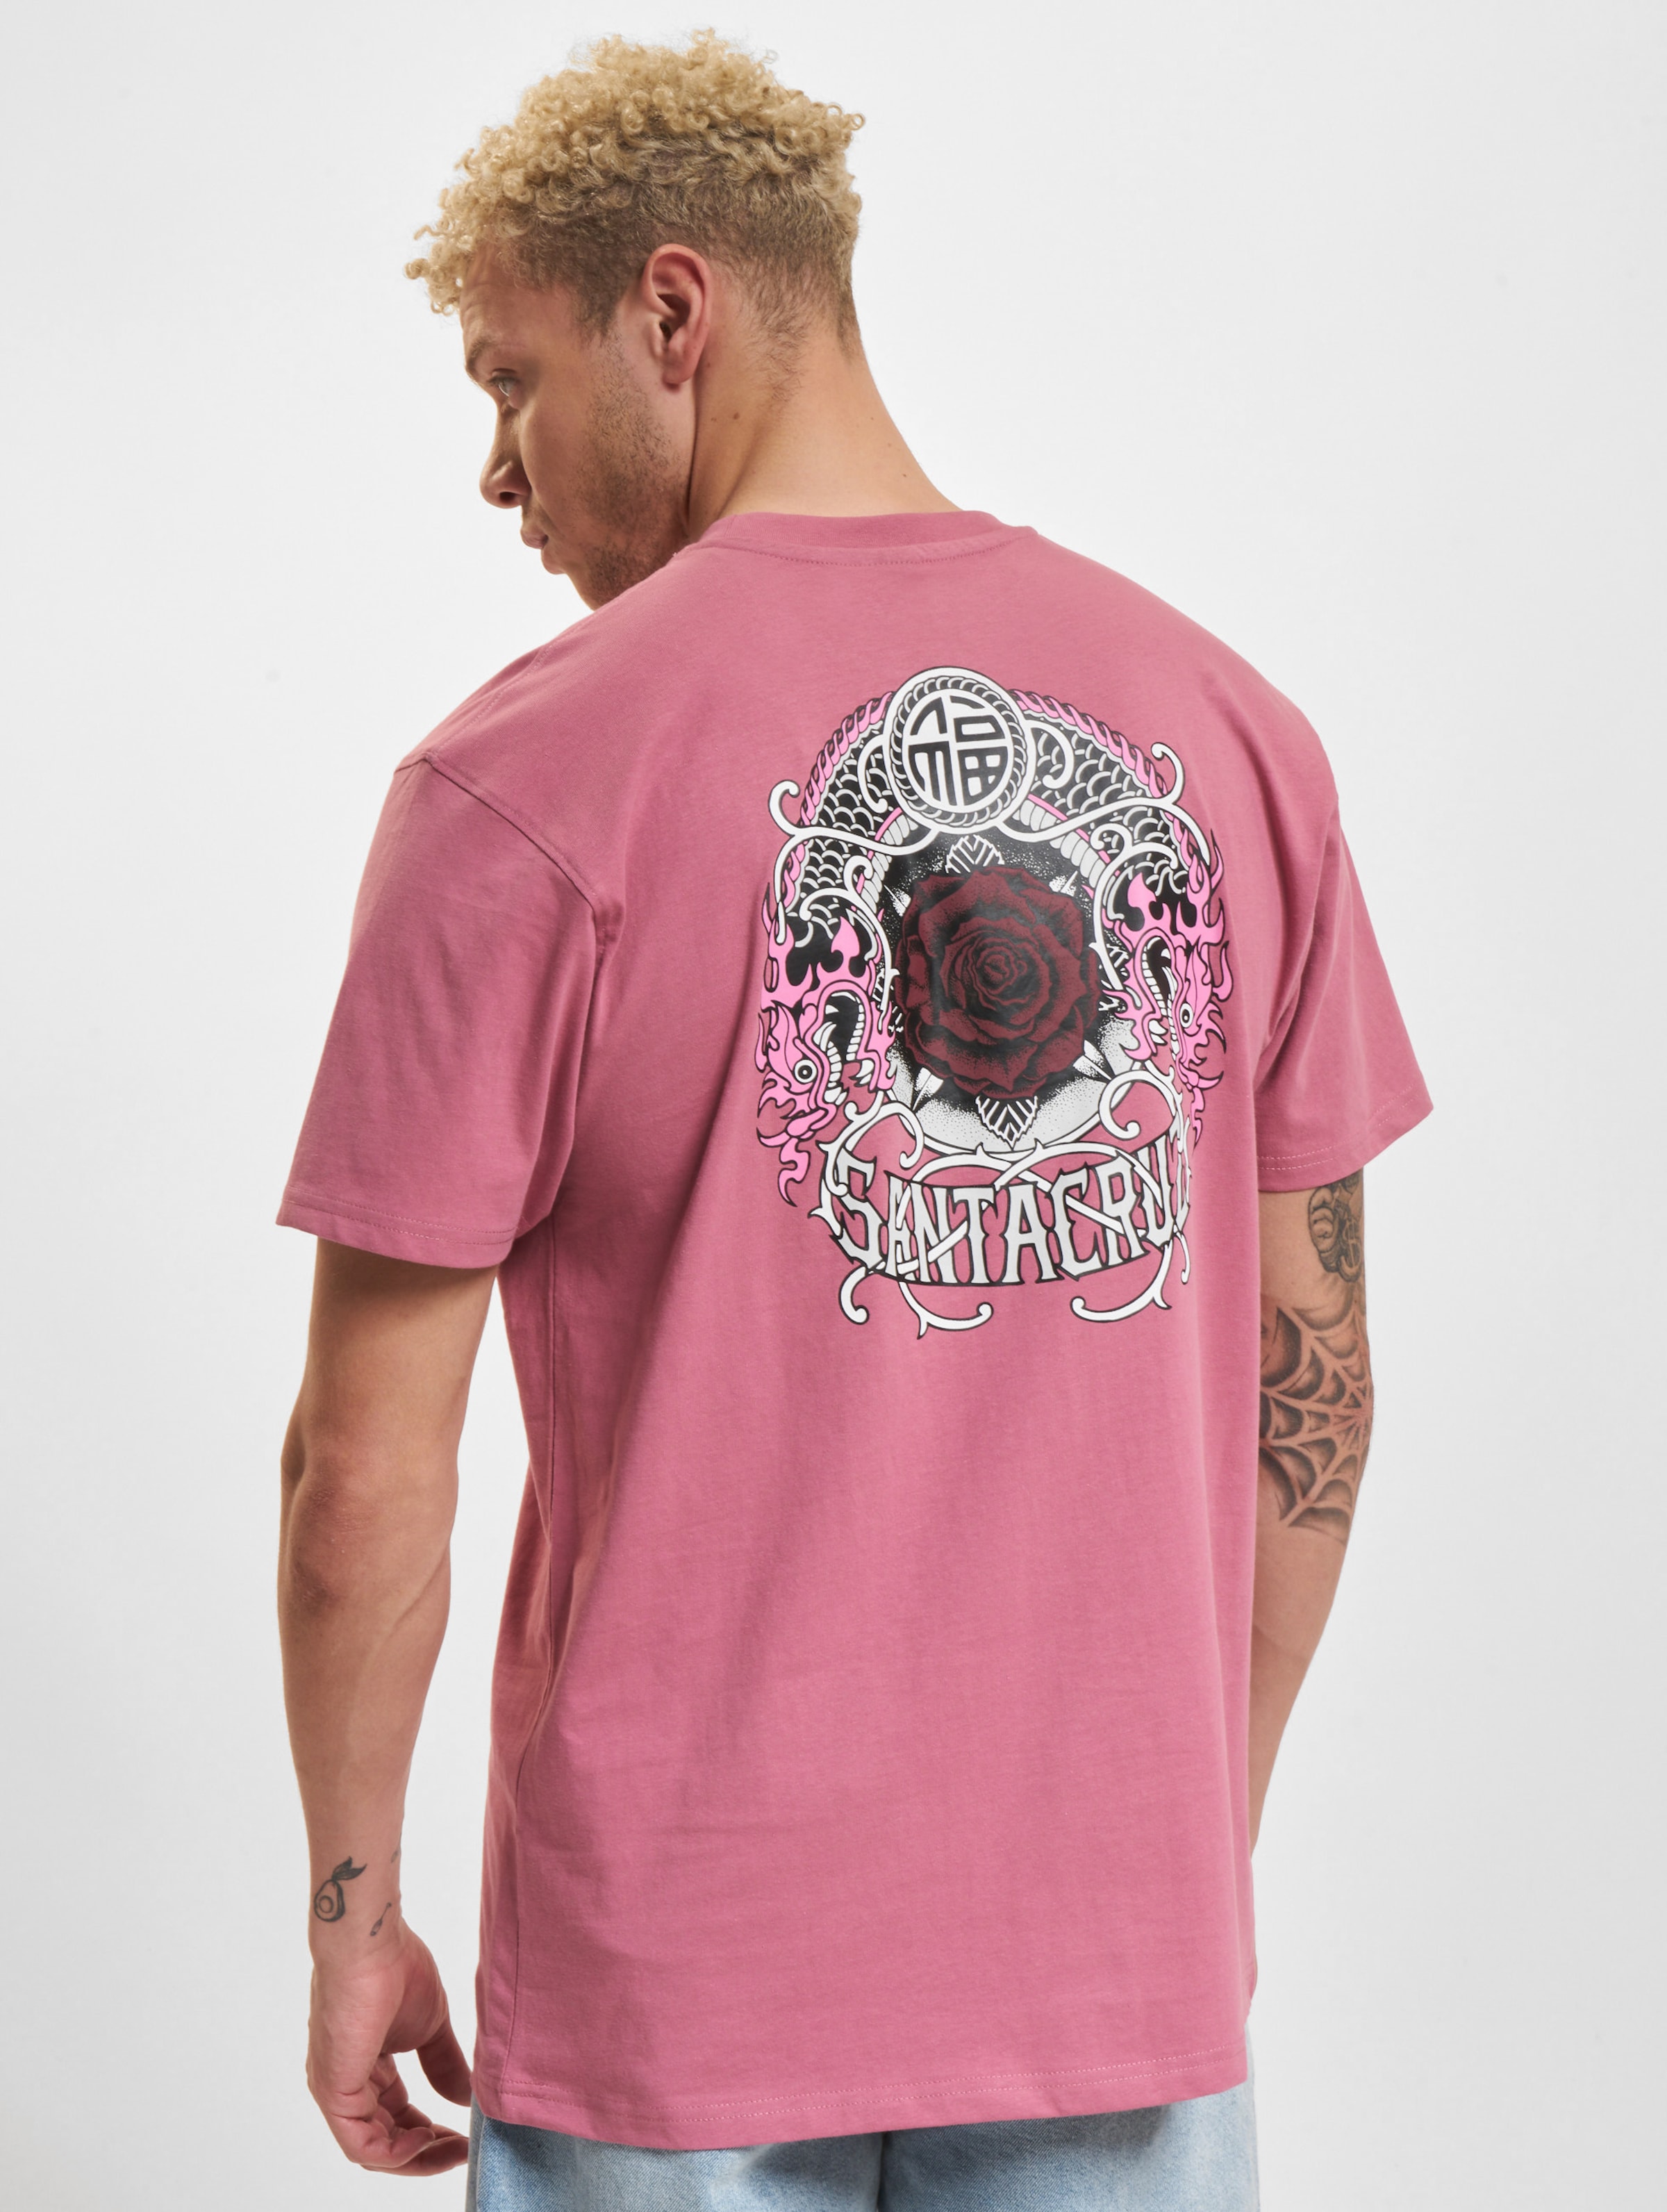 Santa Cruz Dressen Rose Crew One T-Shirt Männer,Unisex op kleur roze, Maat XXL